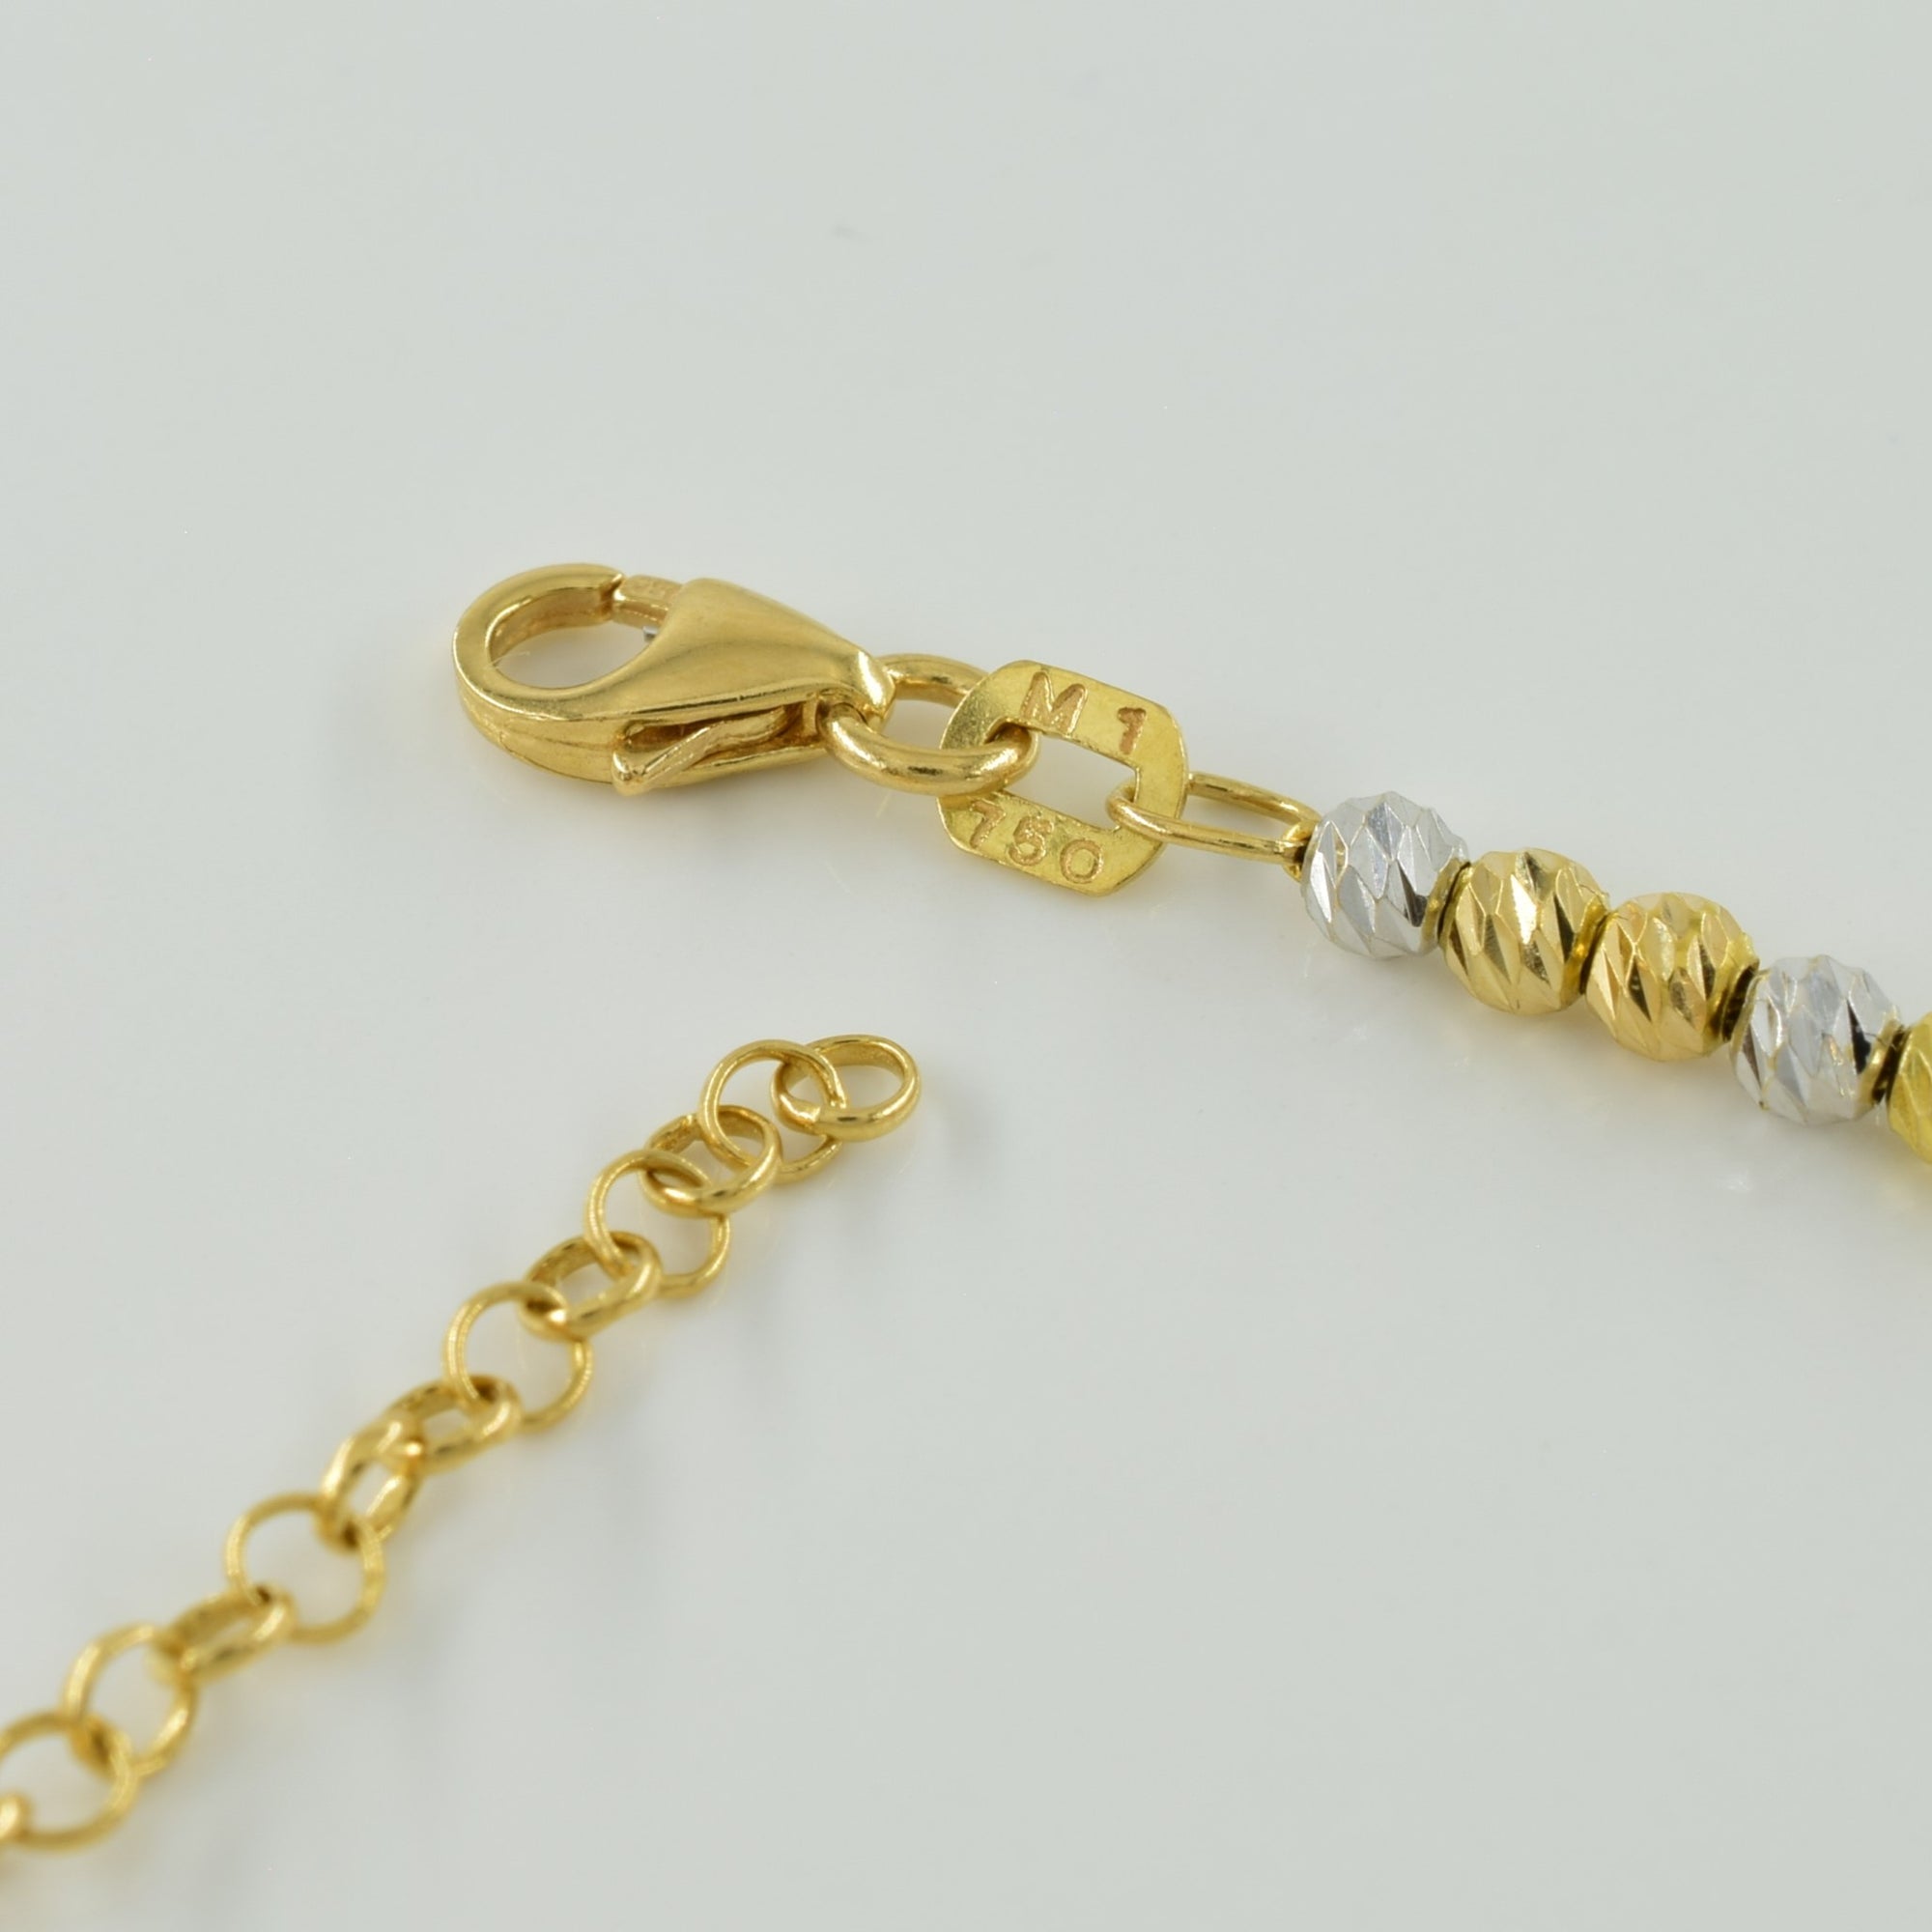 18k Tri Tone Gold Bead Chain | 16.25